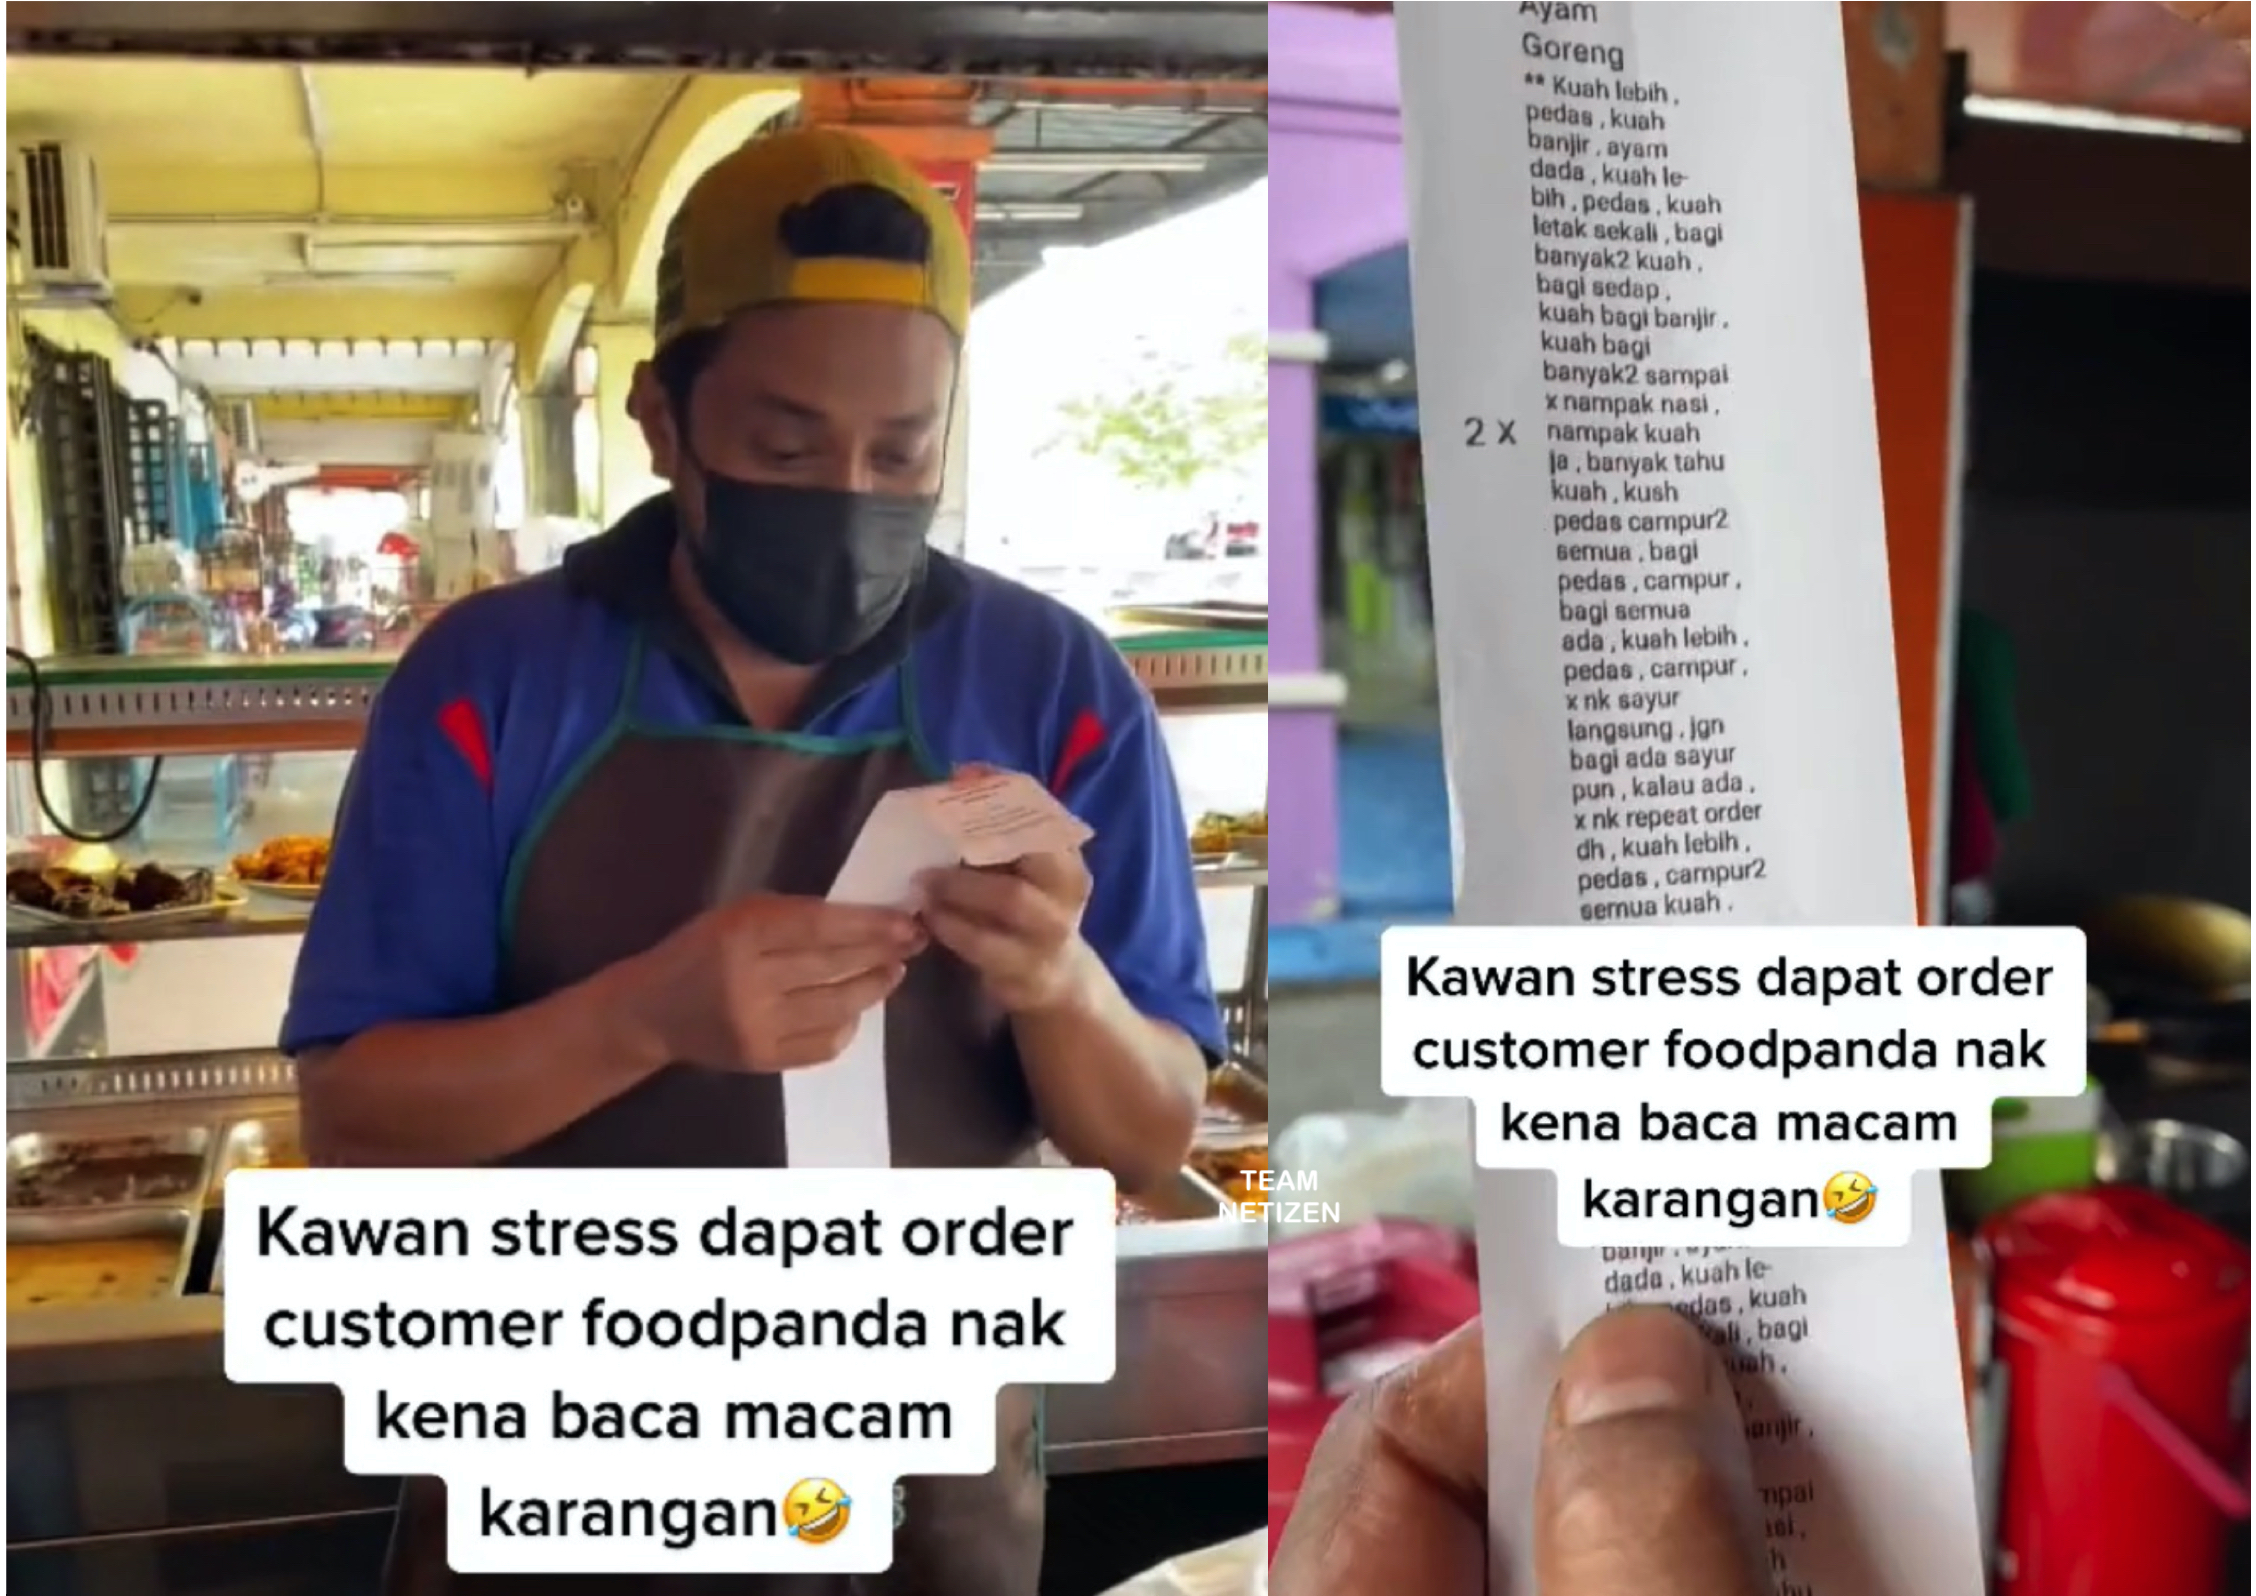 Peniaga Pening Kepala Dapat Order Customer Dengan Mesej Permintaan Panjang Lebar Macam Karangan - nangtime.com